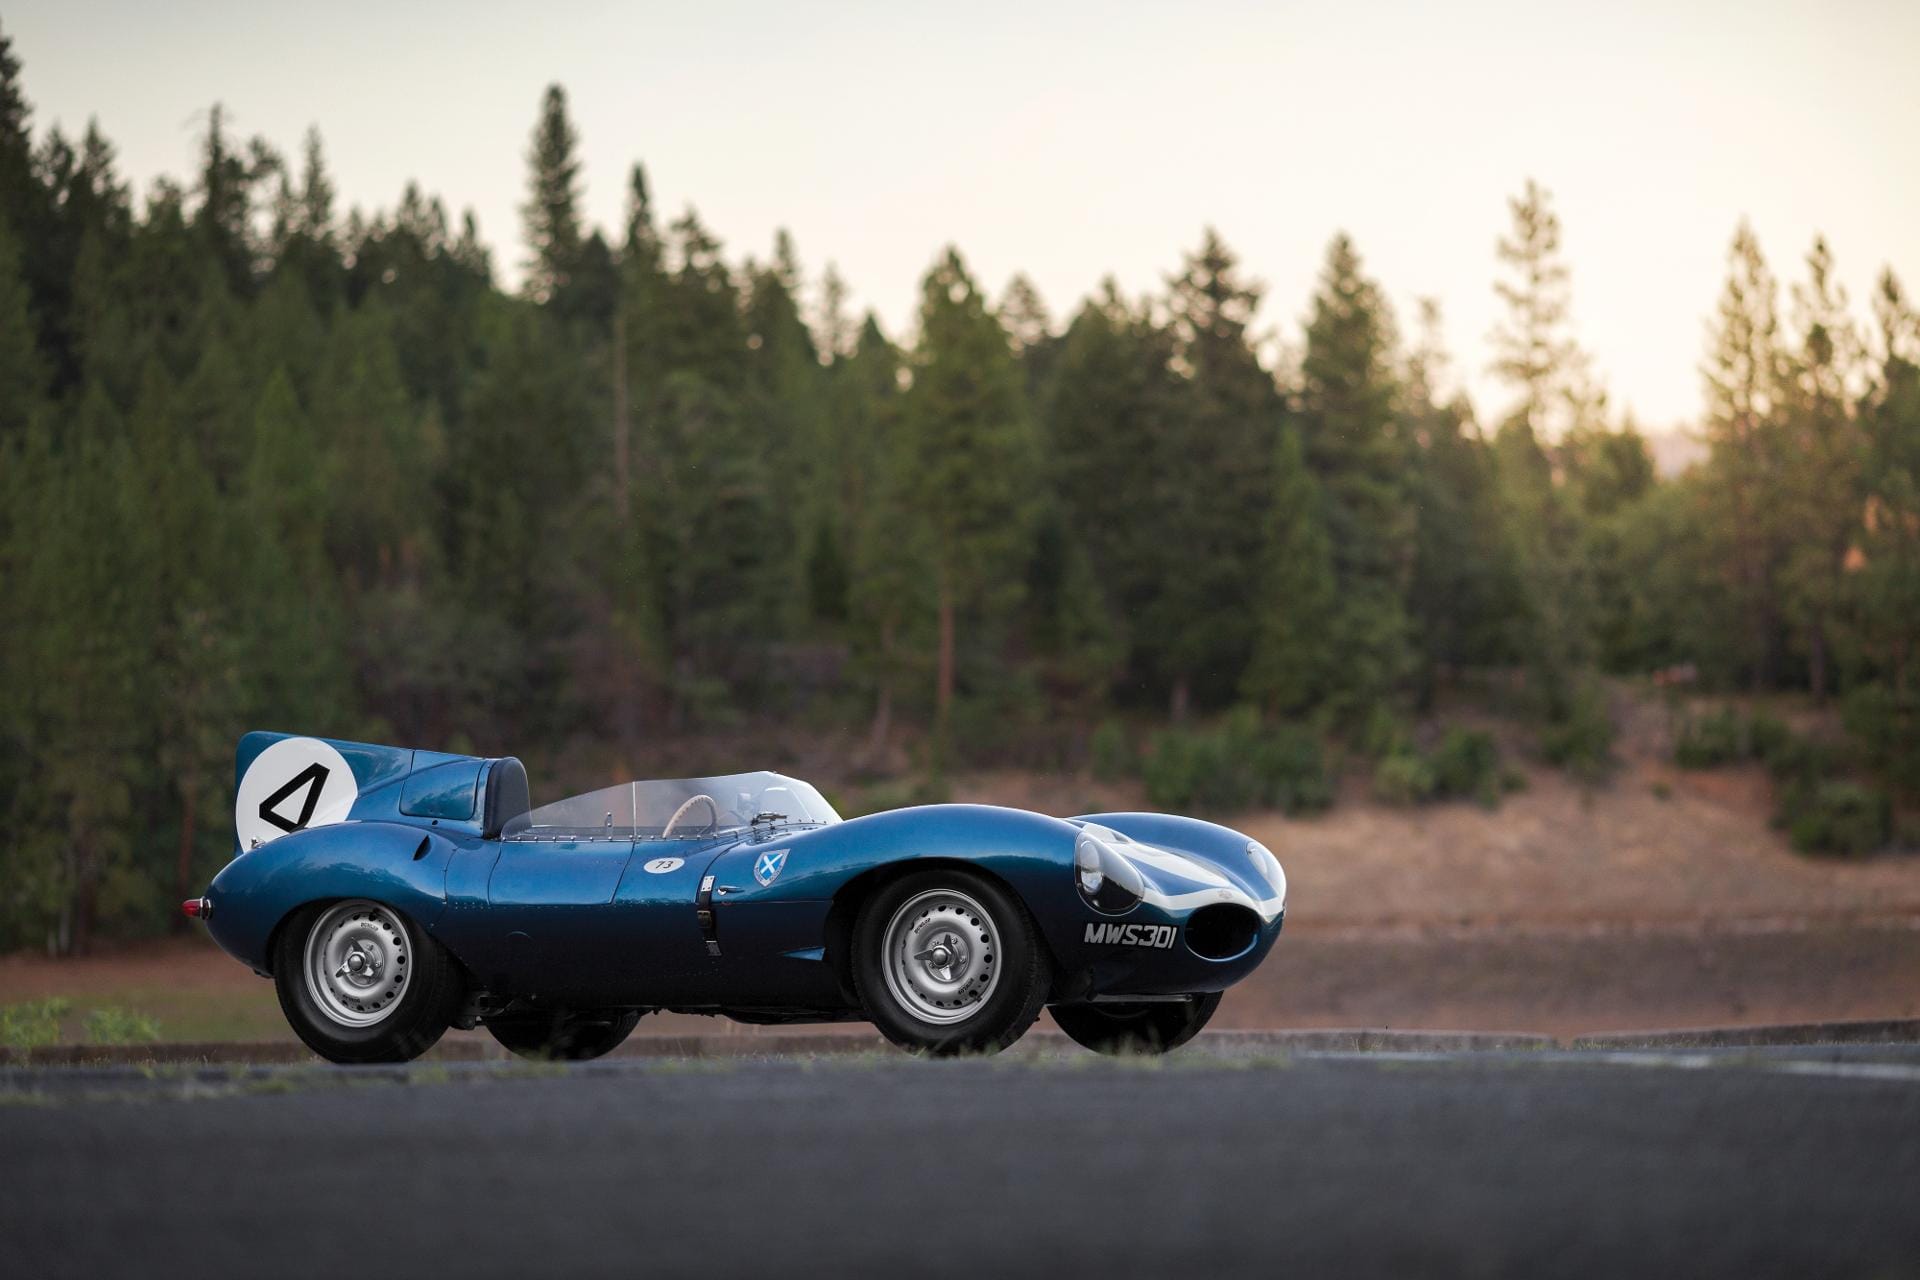 Den siebten Rang belegt ein Jaguar D-Typ aus dem Jahr 1955. Im August 2016 kam der Bolide bei einer Auktion von Sotheby's bei der Monterey Car Week für 21,8 Millionen US-Dollar (rund 19,4 Millionen Euro) unter den Hammer. Der zweisitzige Rennwagen, Nachfolger des Jaguar C-Type, belegte 1956 bei den 24 Stunden von Le Mans den ersten Platz mit fünf Runden Vorsprung vor dem Zweitplatzierten.